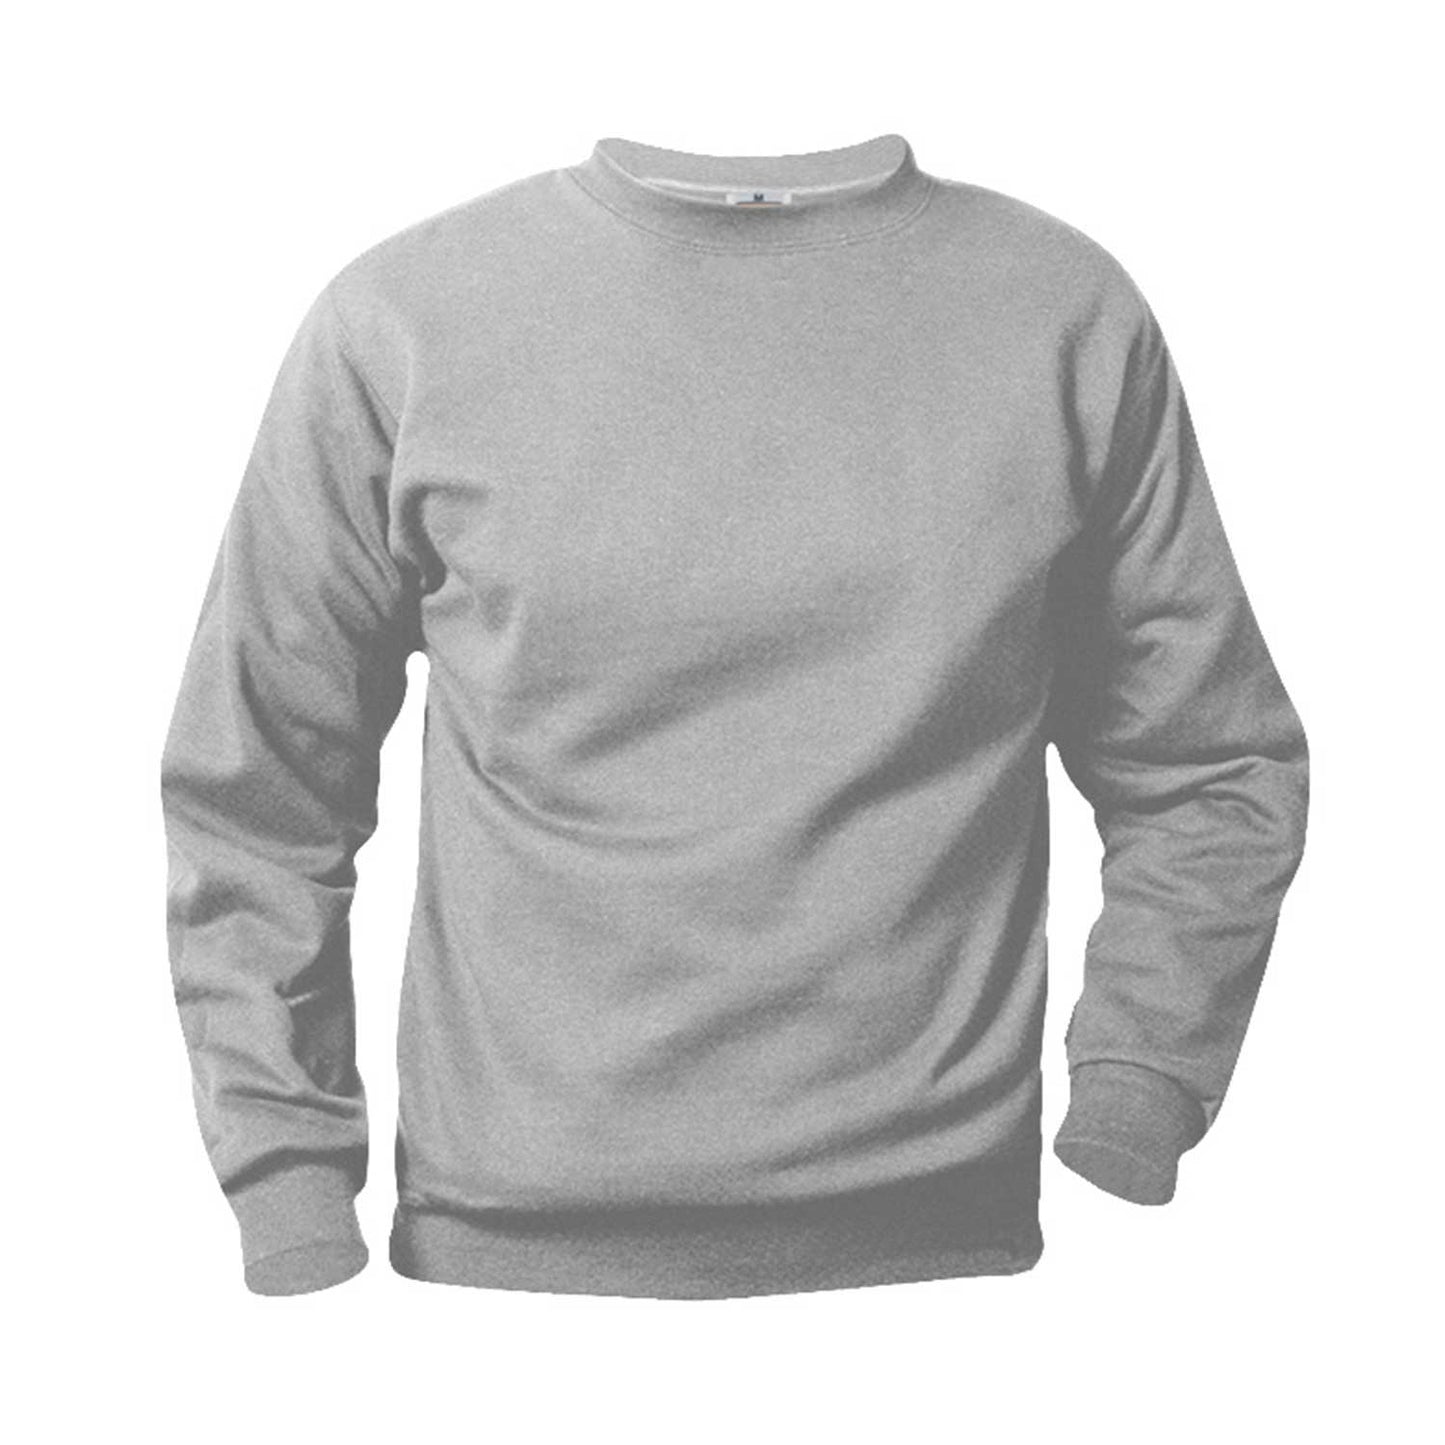 Unisex Crewneck Fleece Sweatshirt w/Logo - 1107